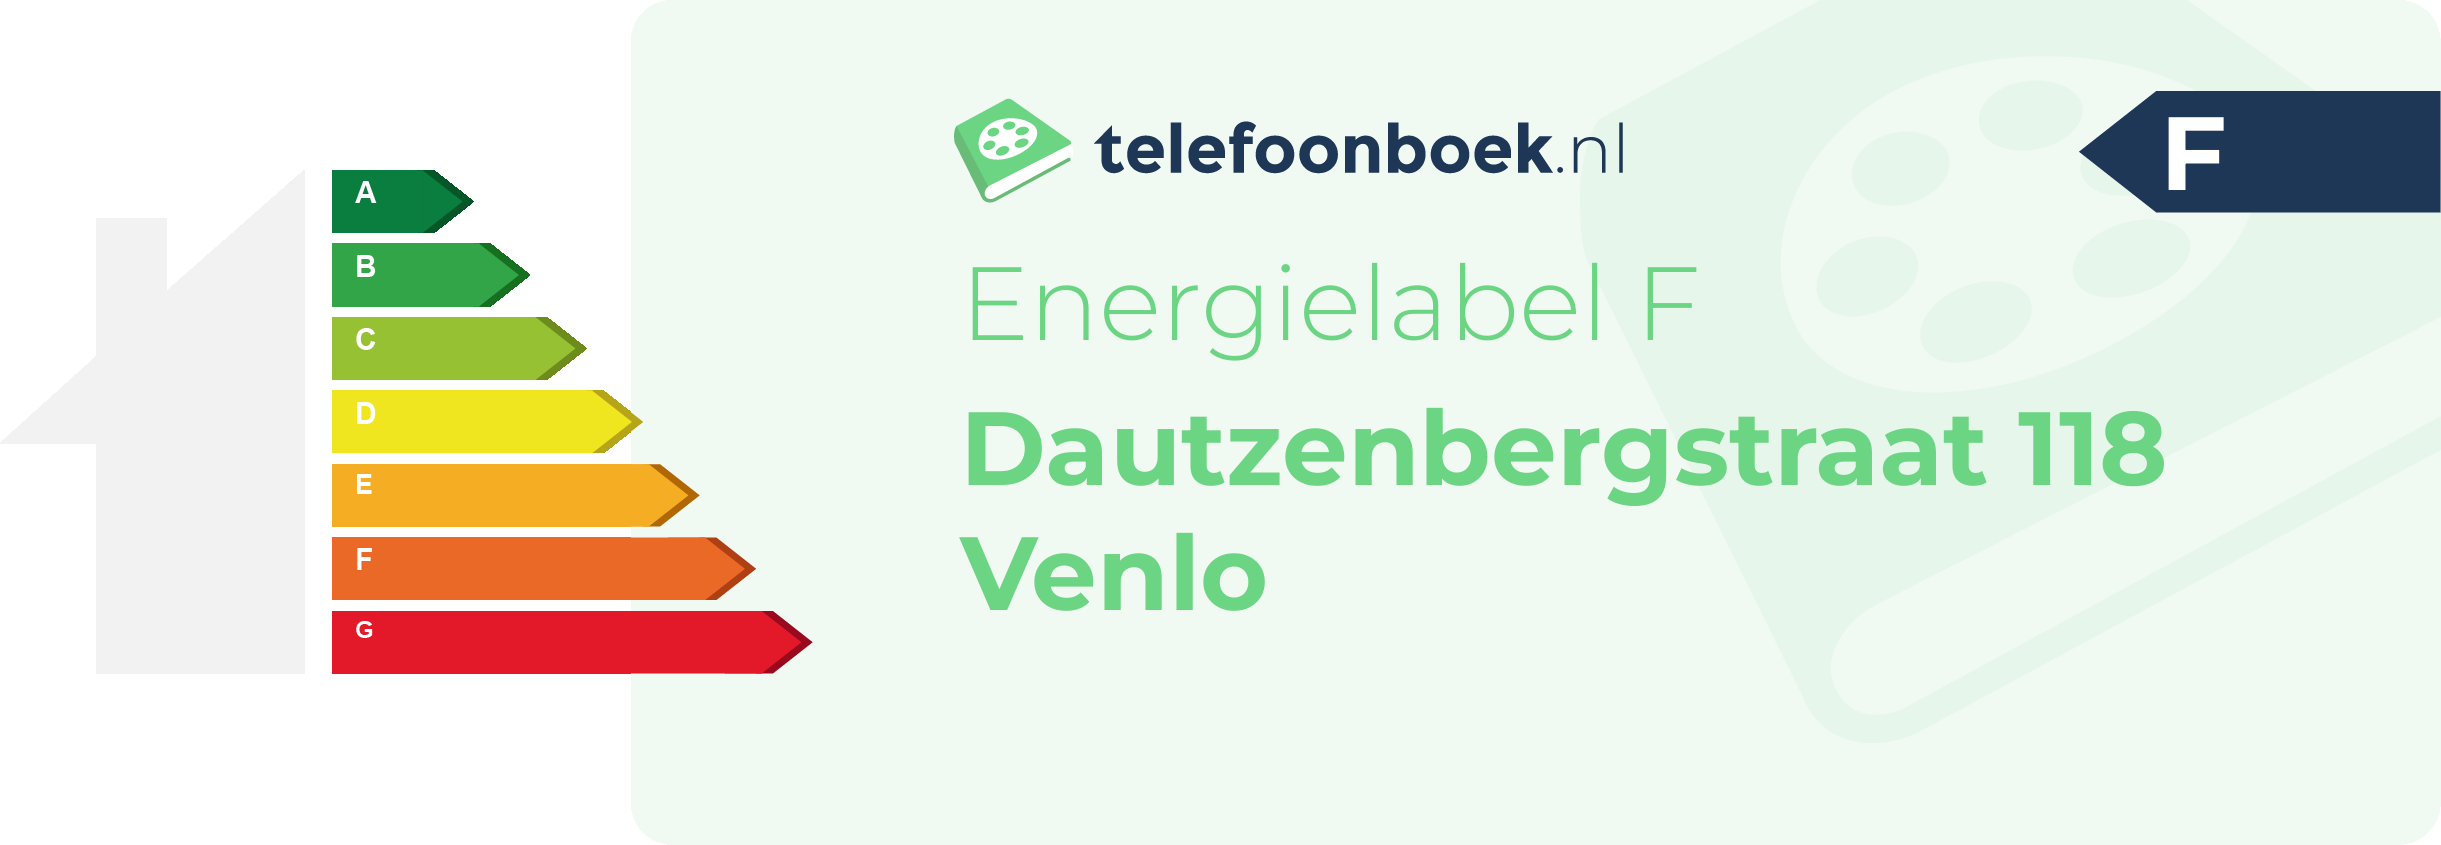 Energielabel Dautzenbergstraat 118 Venlo